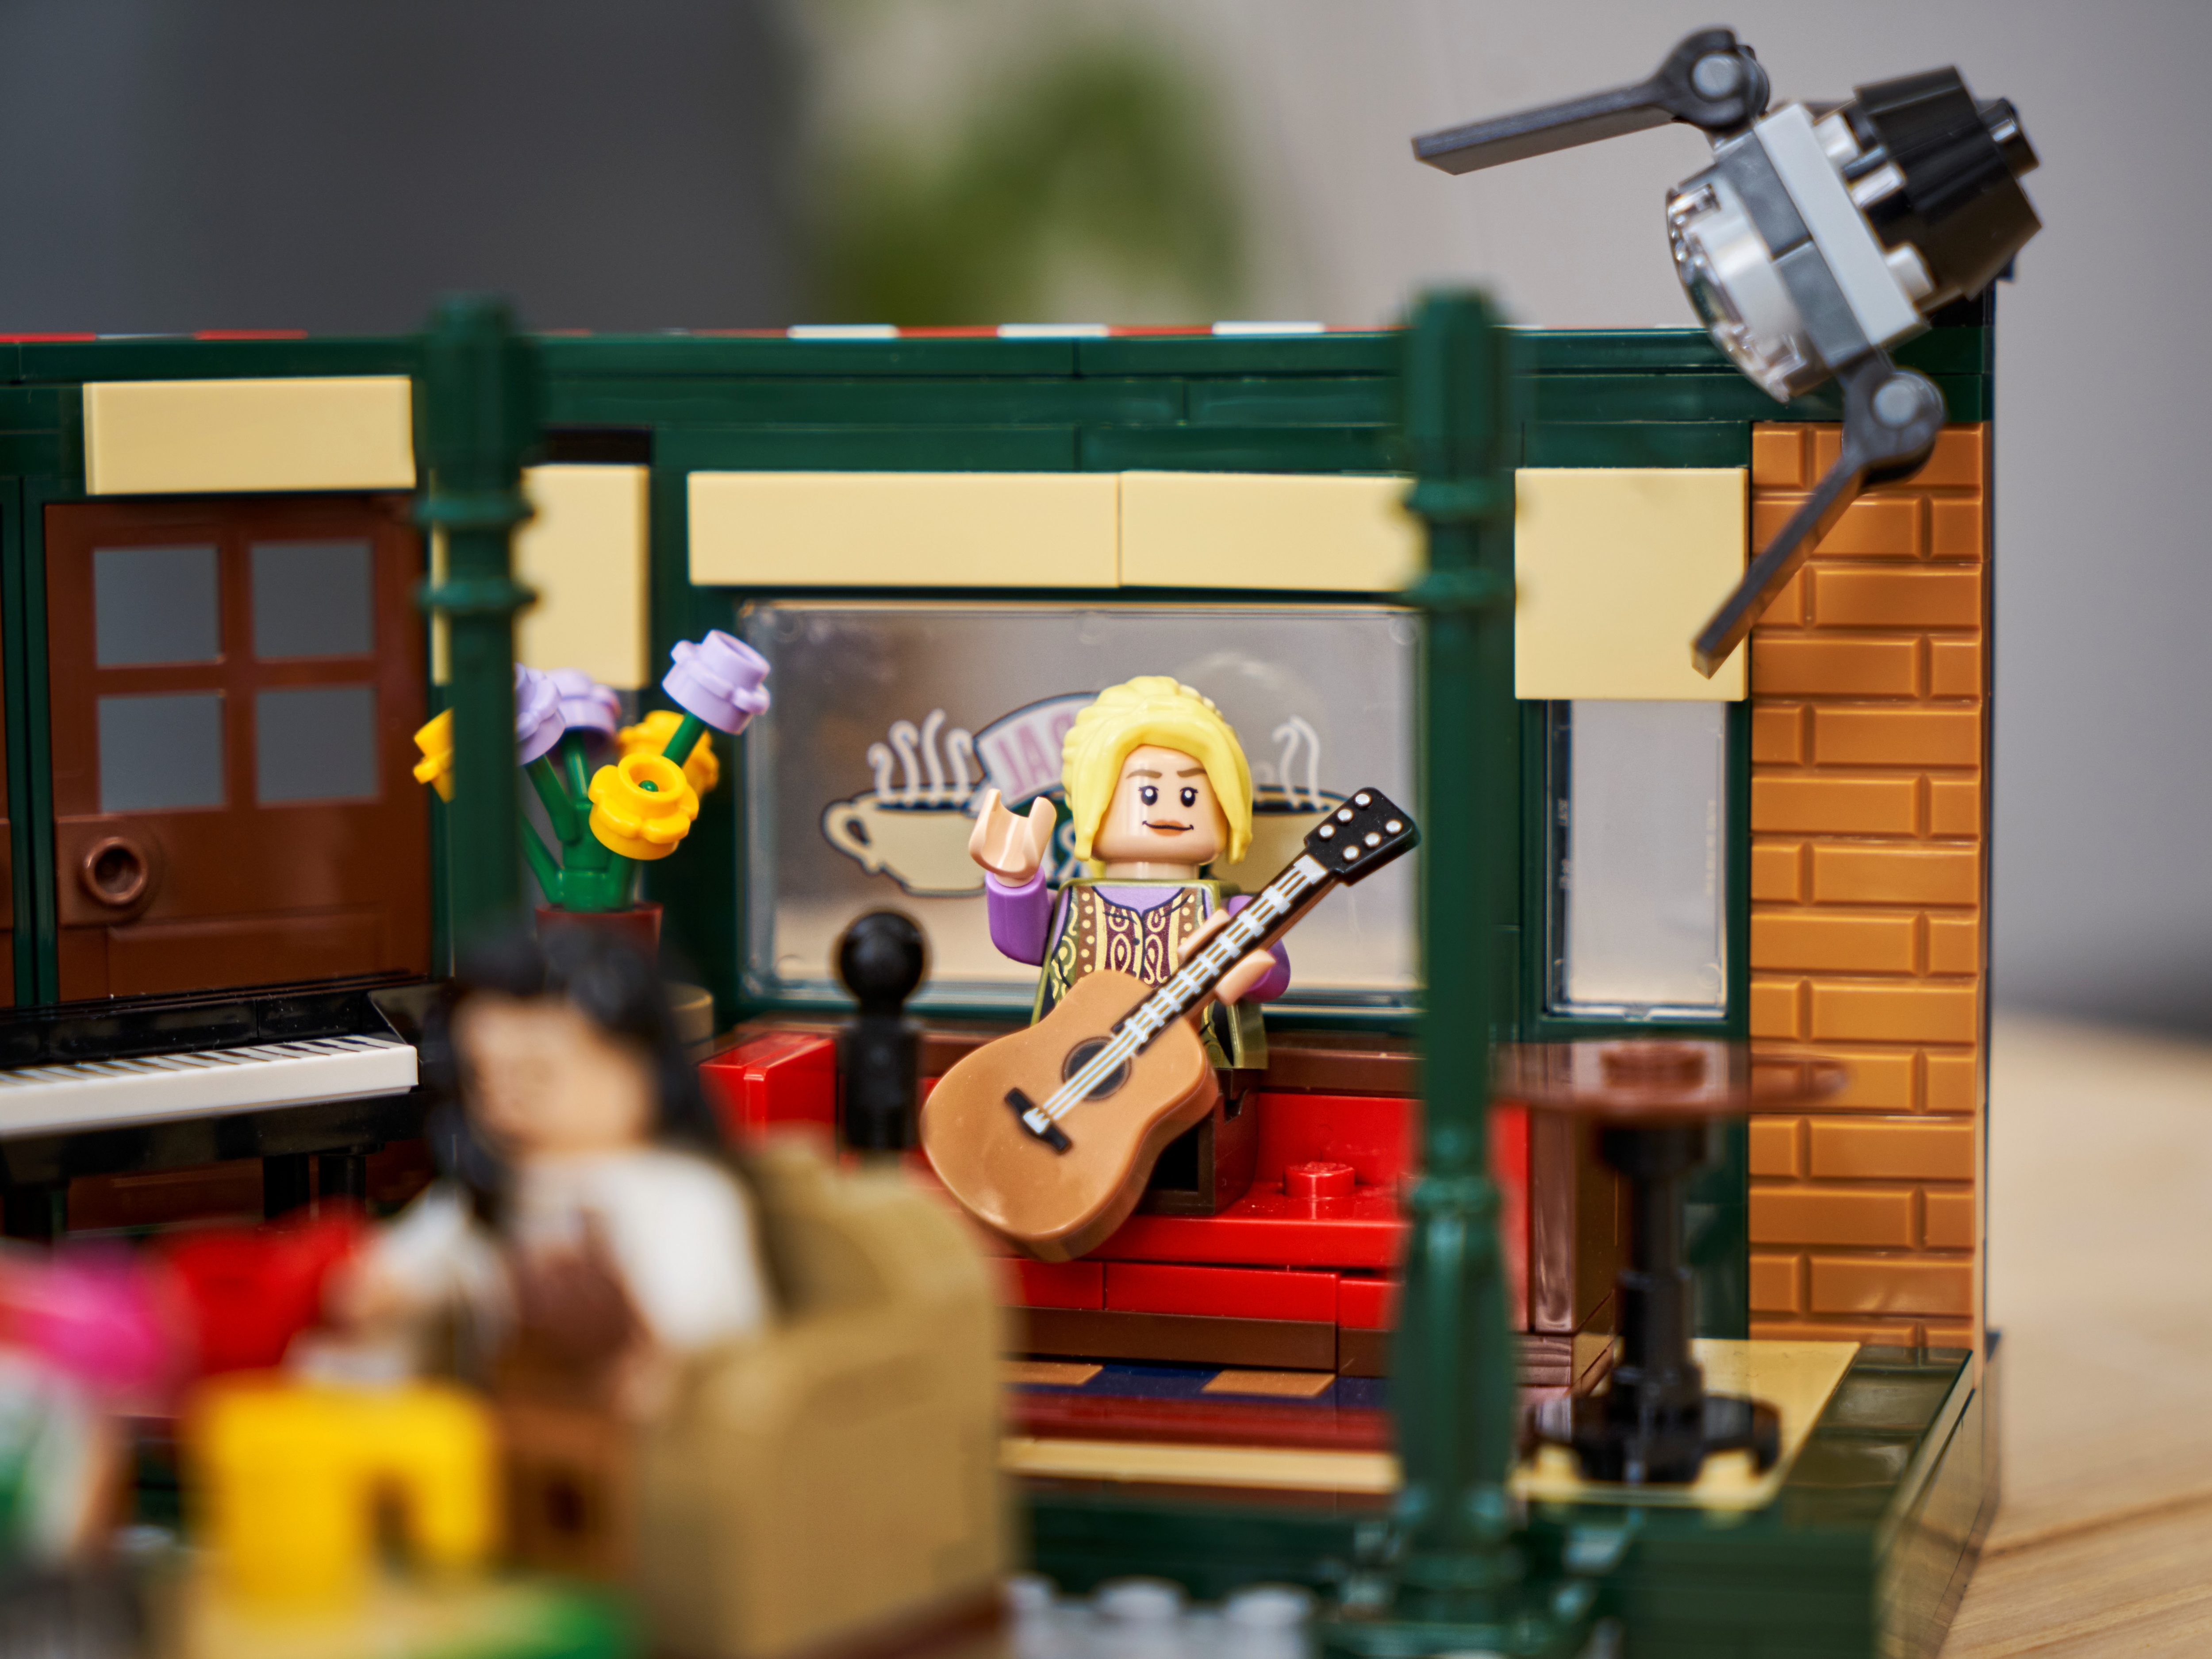 Friends : le Central Perk LEGO est en promotion ! - News Séries - AlloCiné